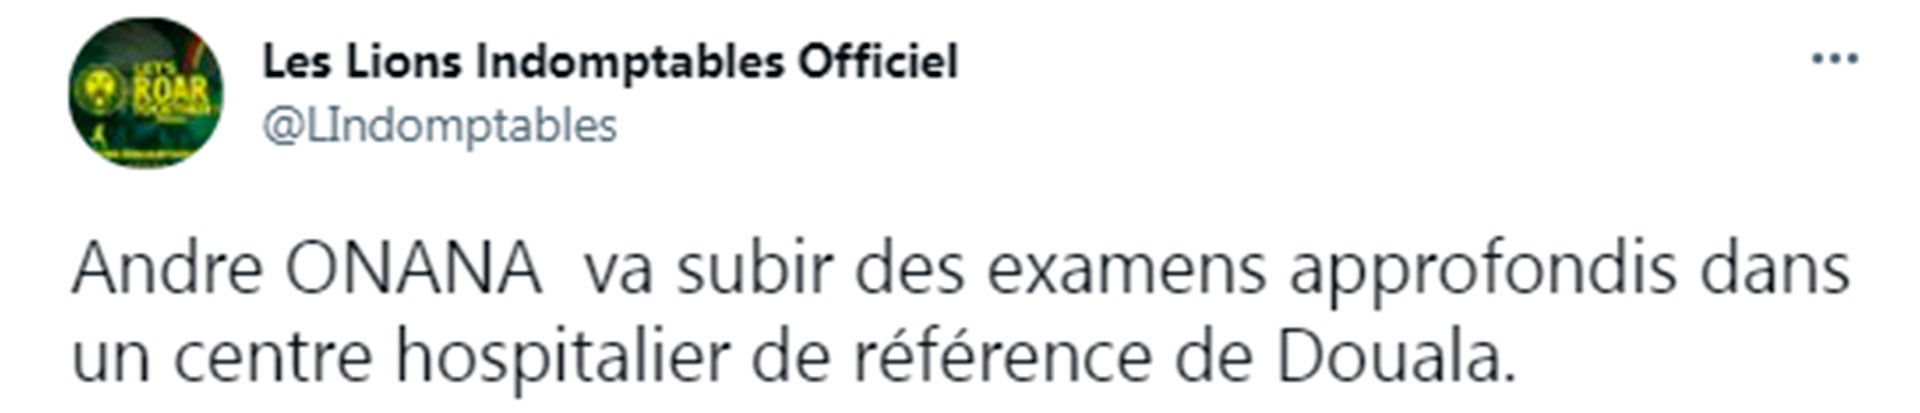 La selección de Camerún confirmó que André Onana se hará estudio médicos para descartar cualquier lesión tras el accidente (@LIndomptables)